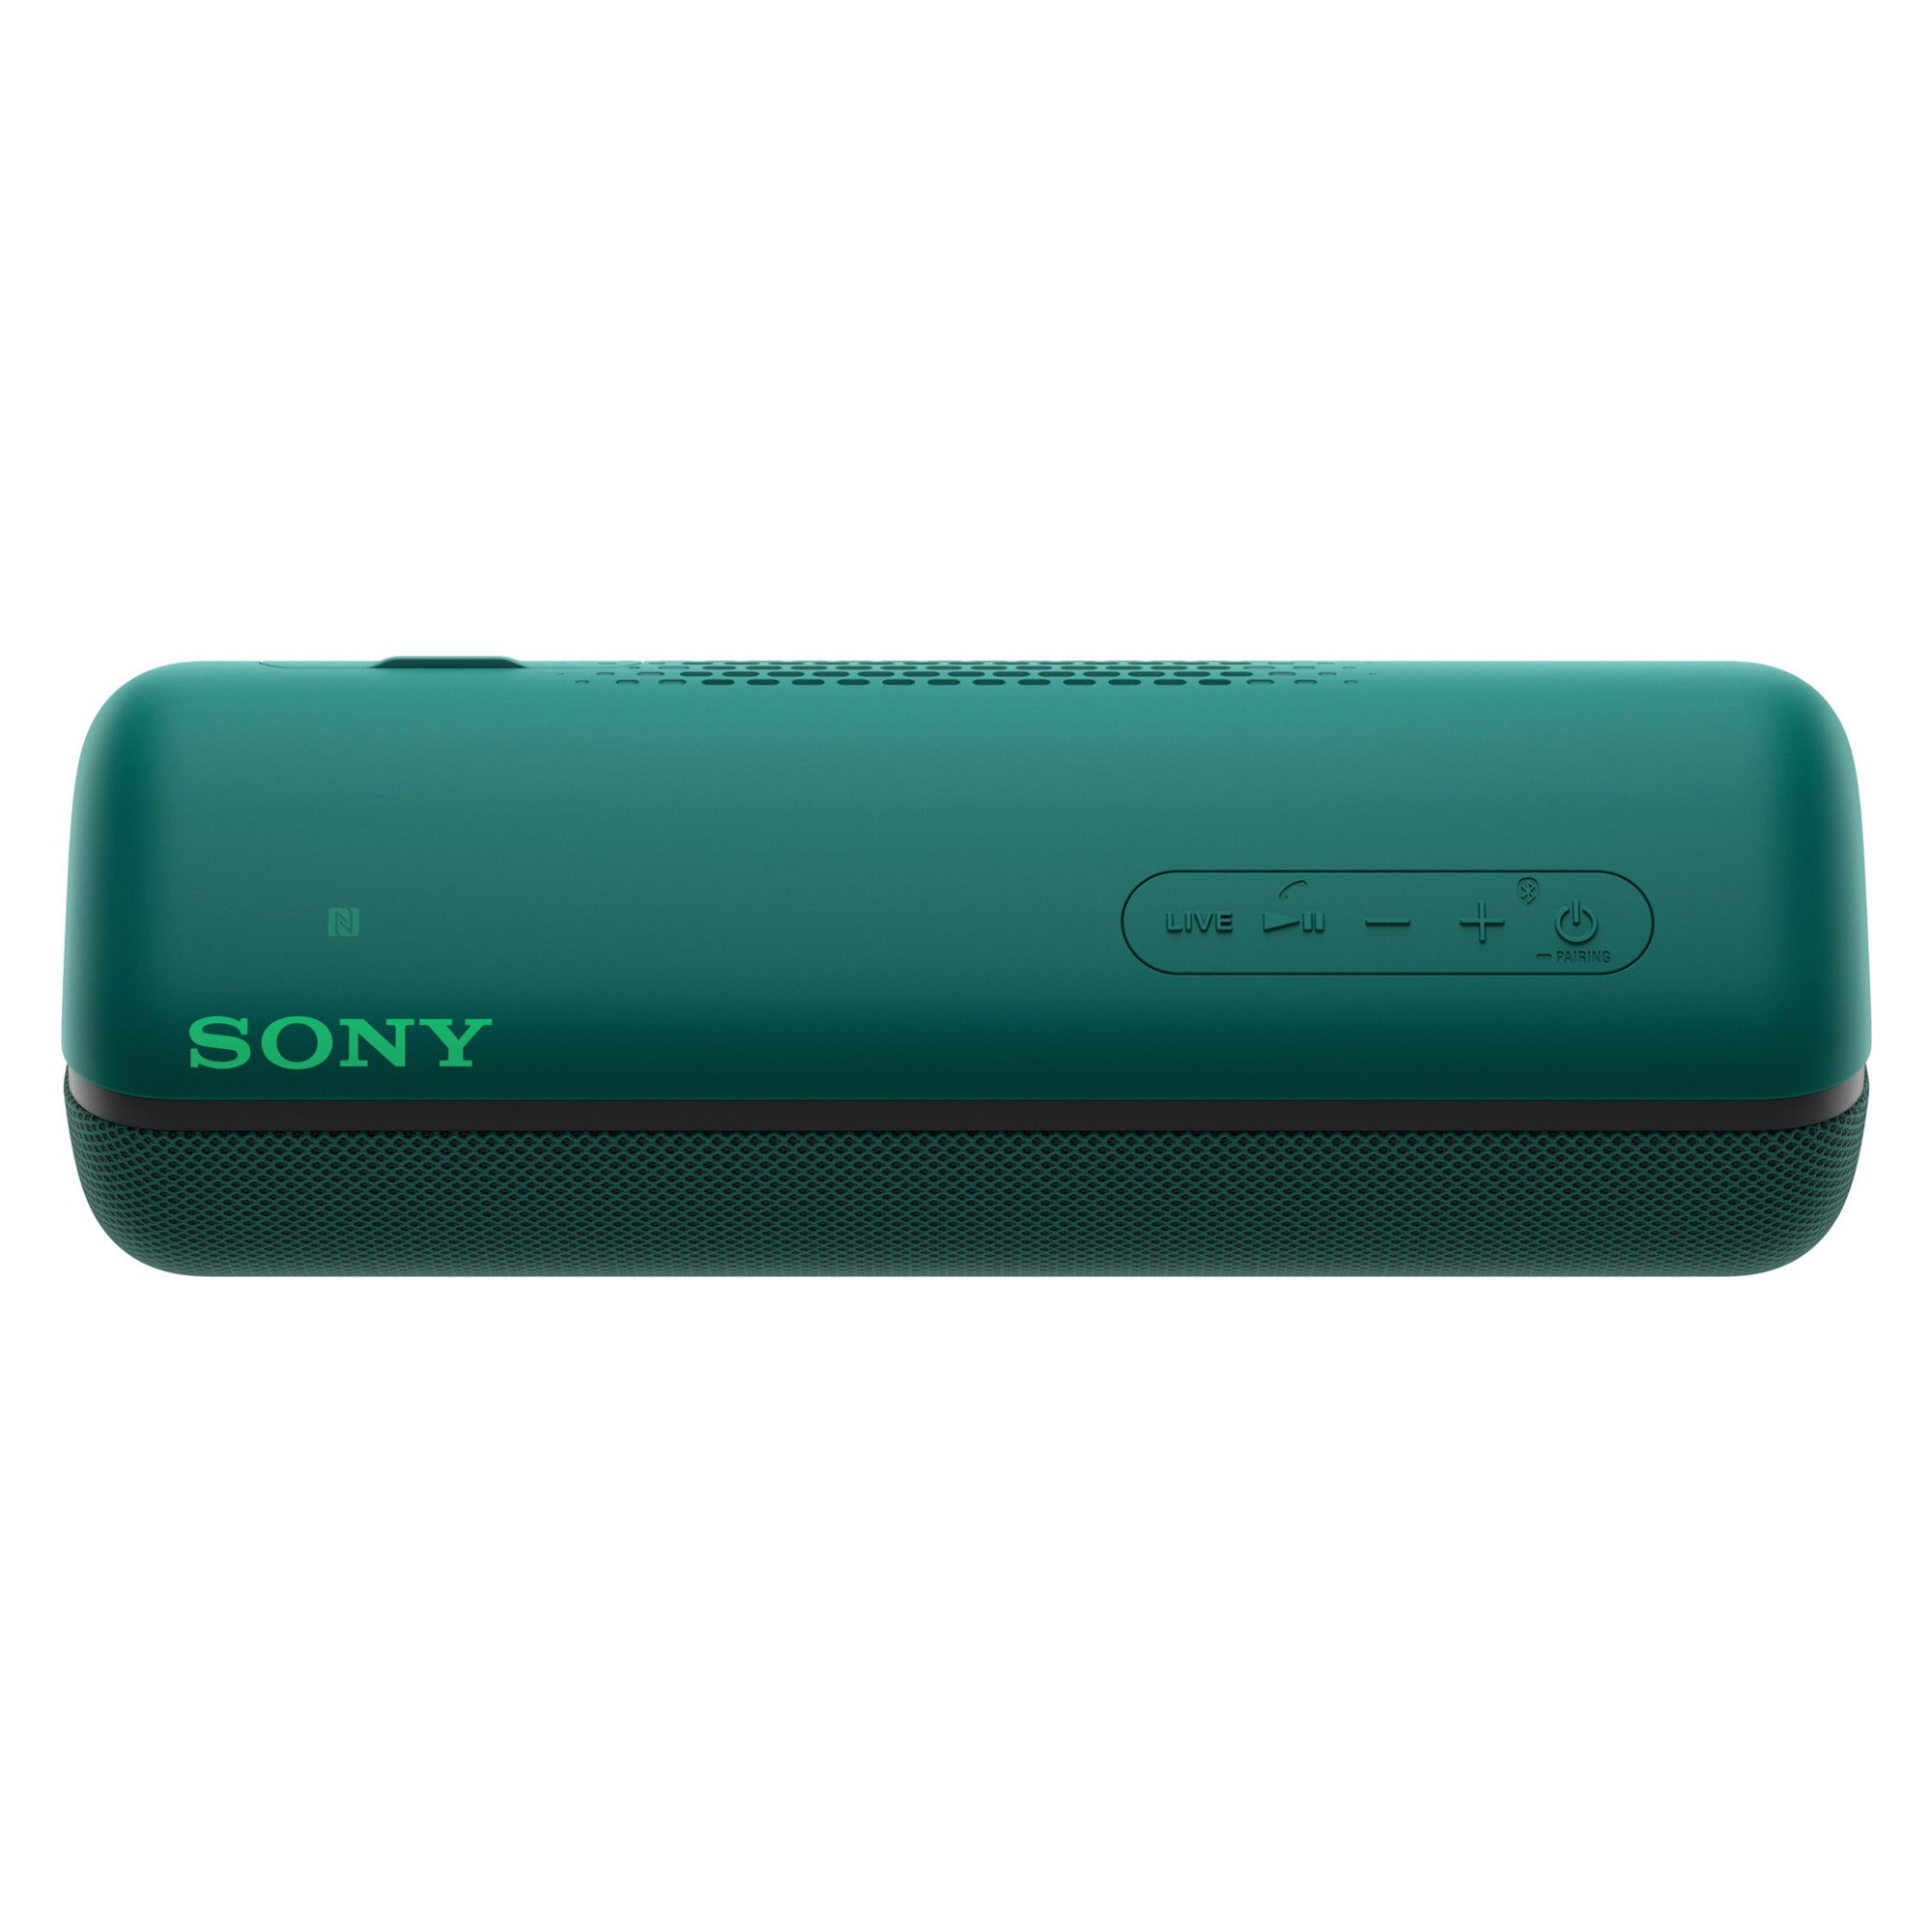 Zvučnik Sony SRSXB32G.CE7